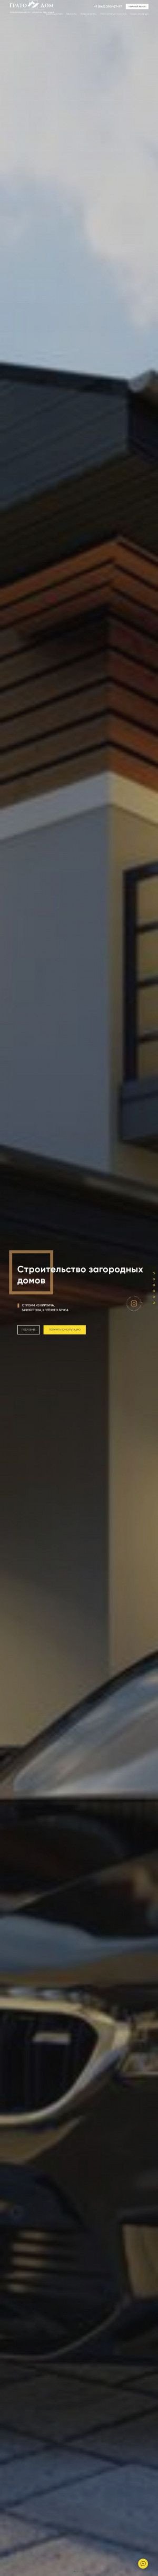 Предпросмотр для www.gratodom.ru — Гратодом